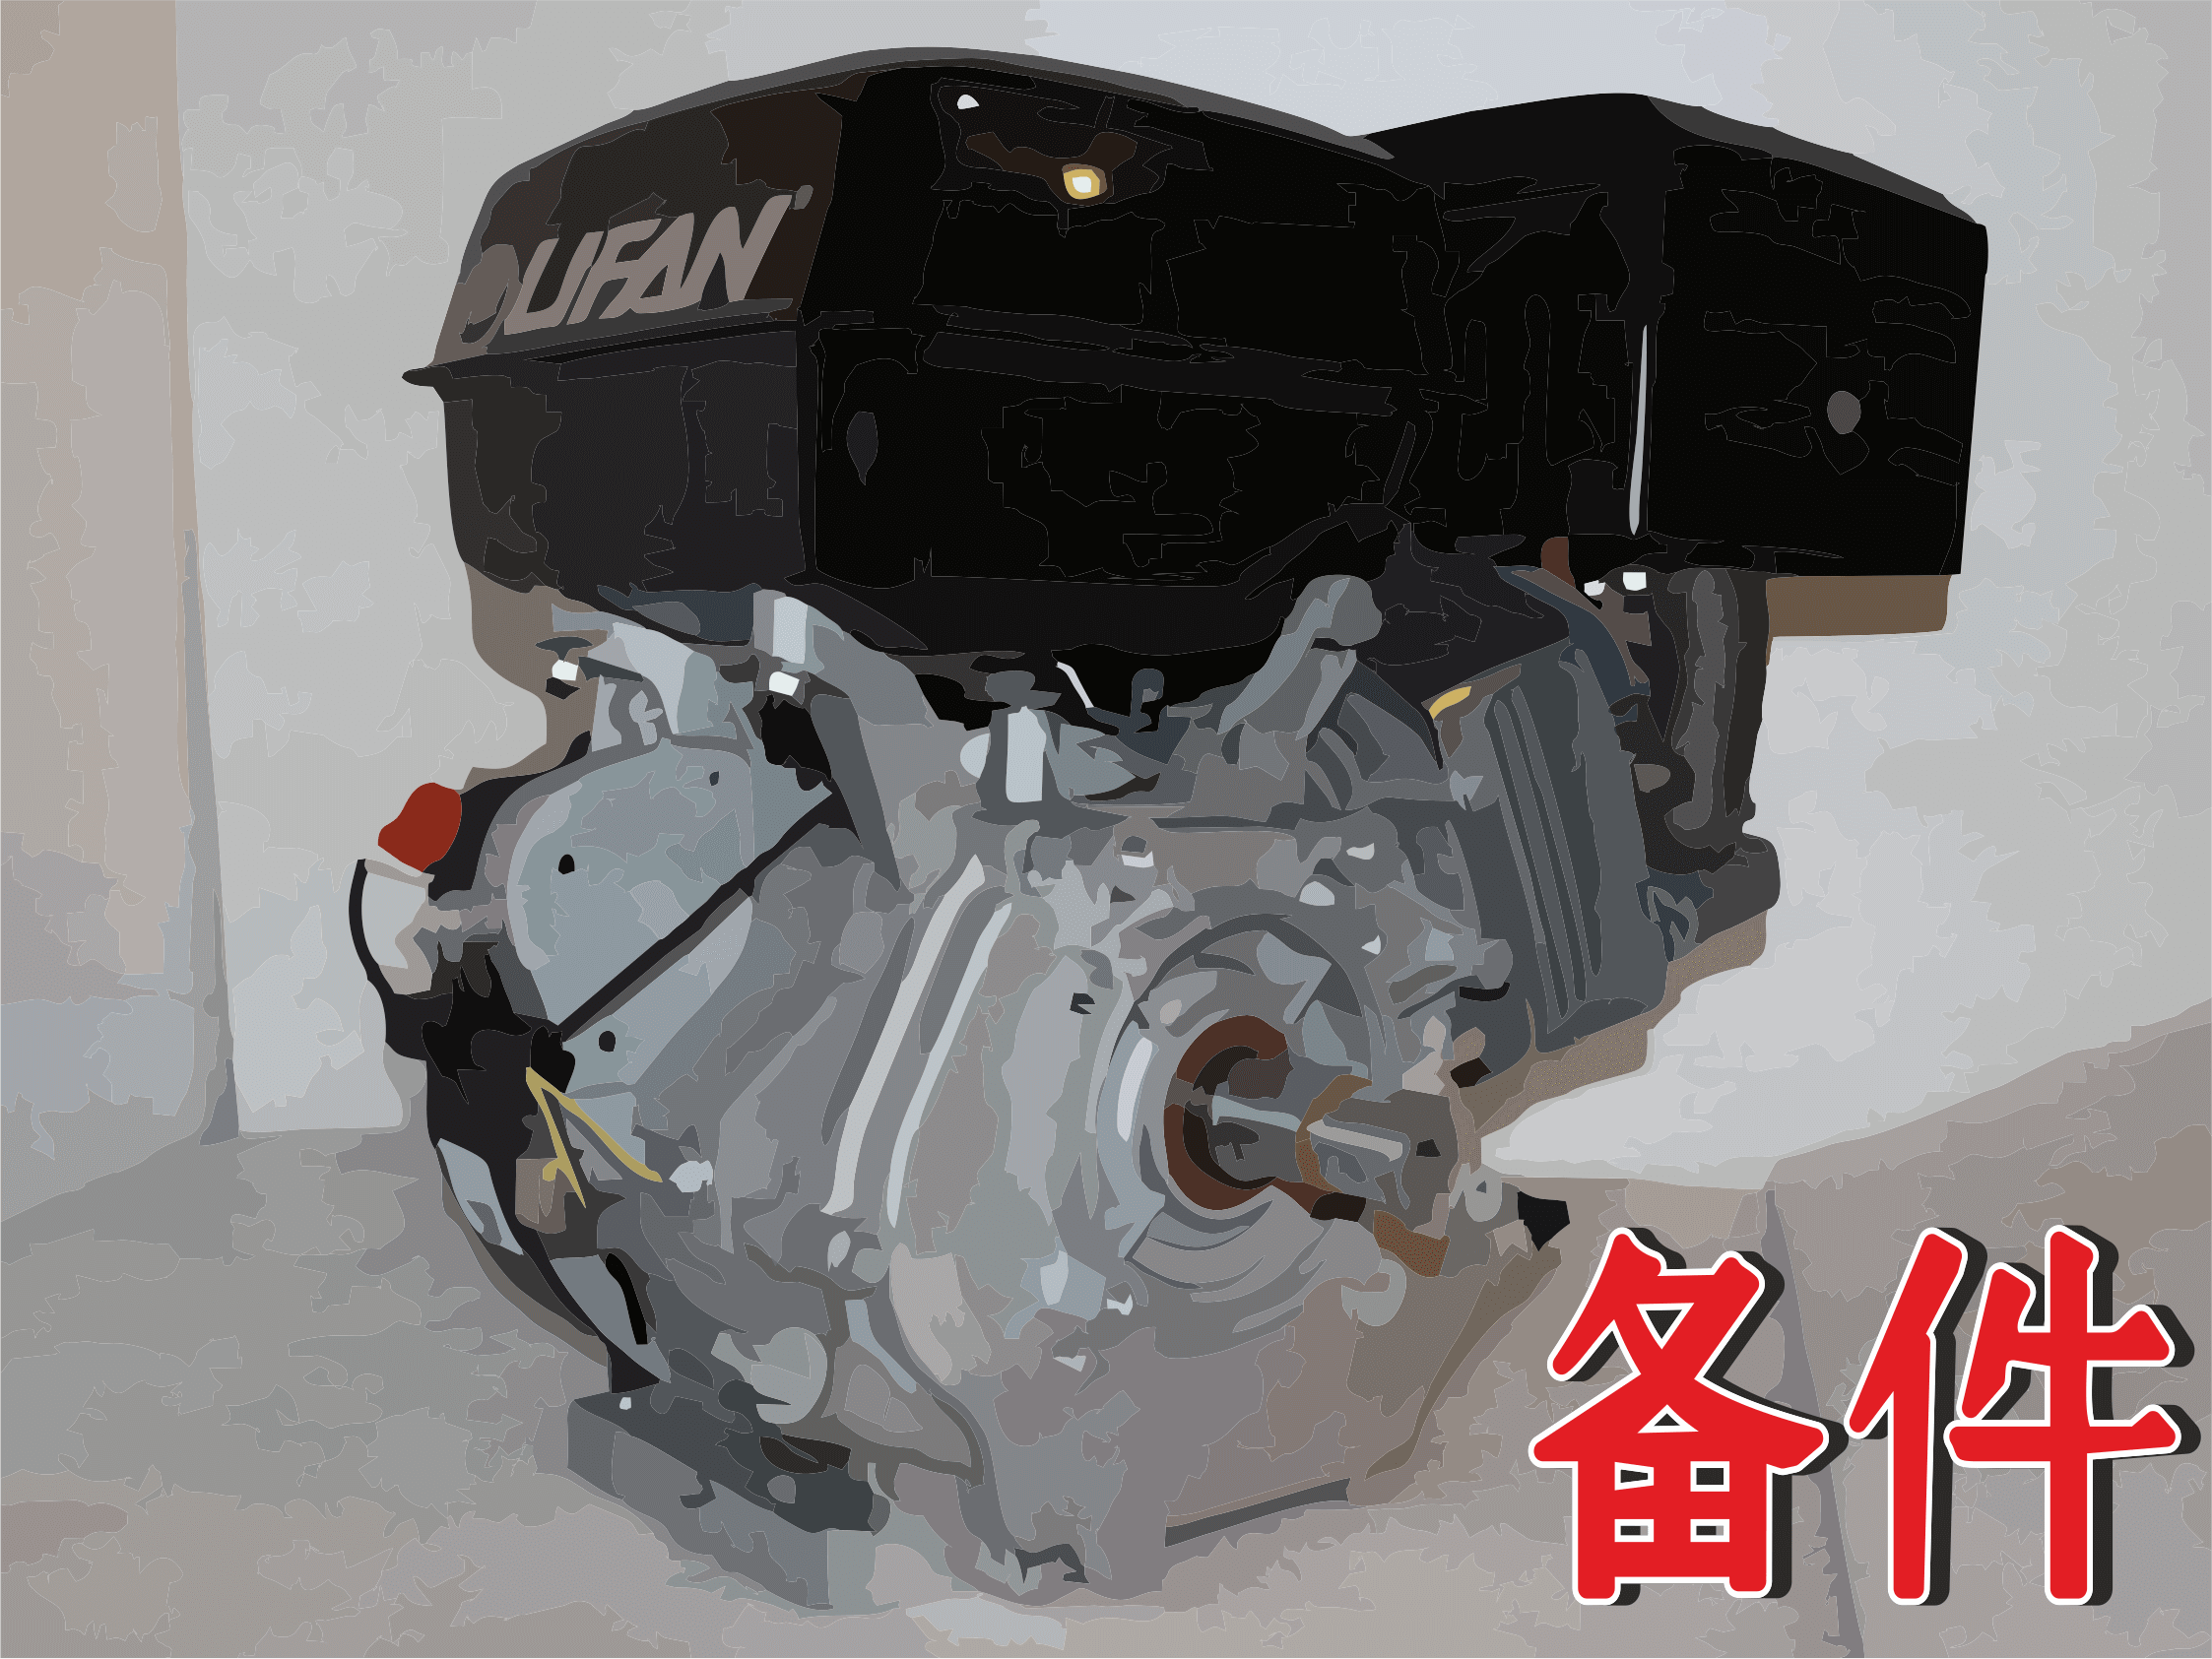 Купить двигатель лифан 9. Двигатель Lifan 190f. Lifan 190f. Мотор Лифан 190f 15 л.с. Двигатель Lifan 192f-2.